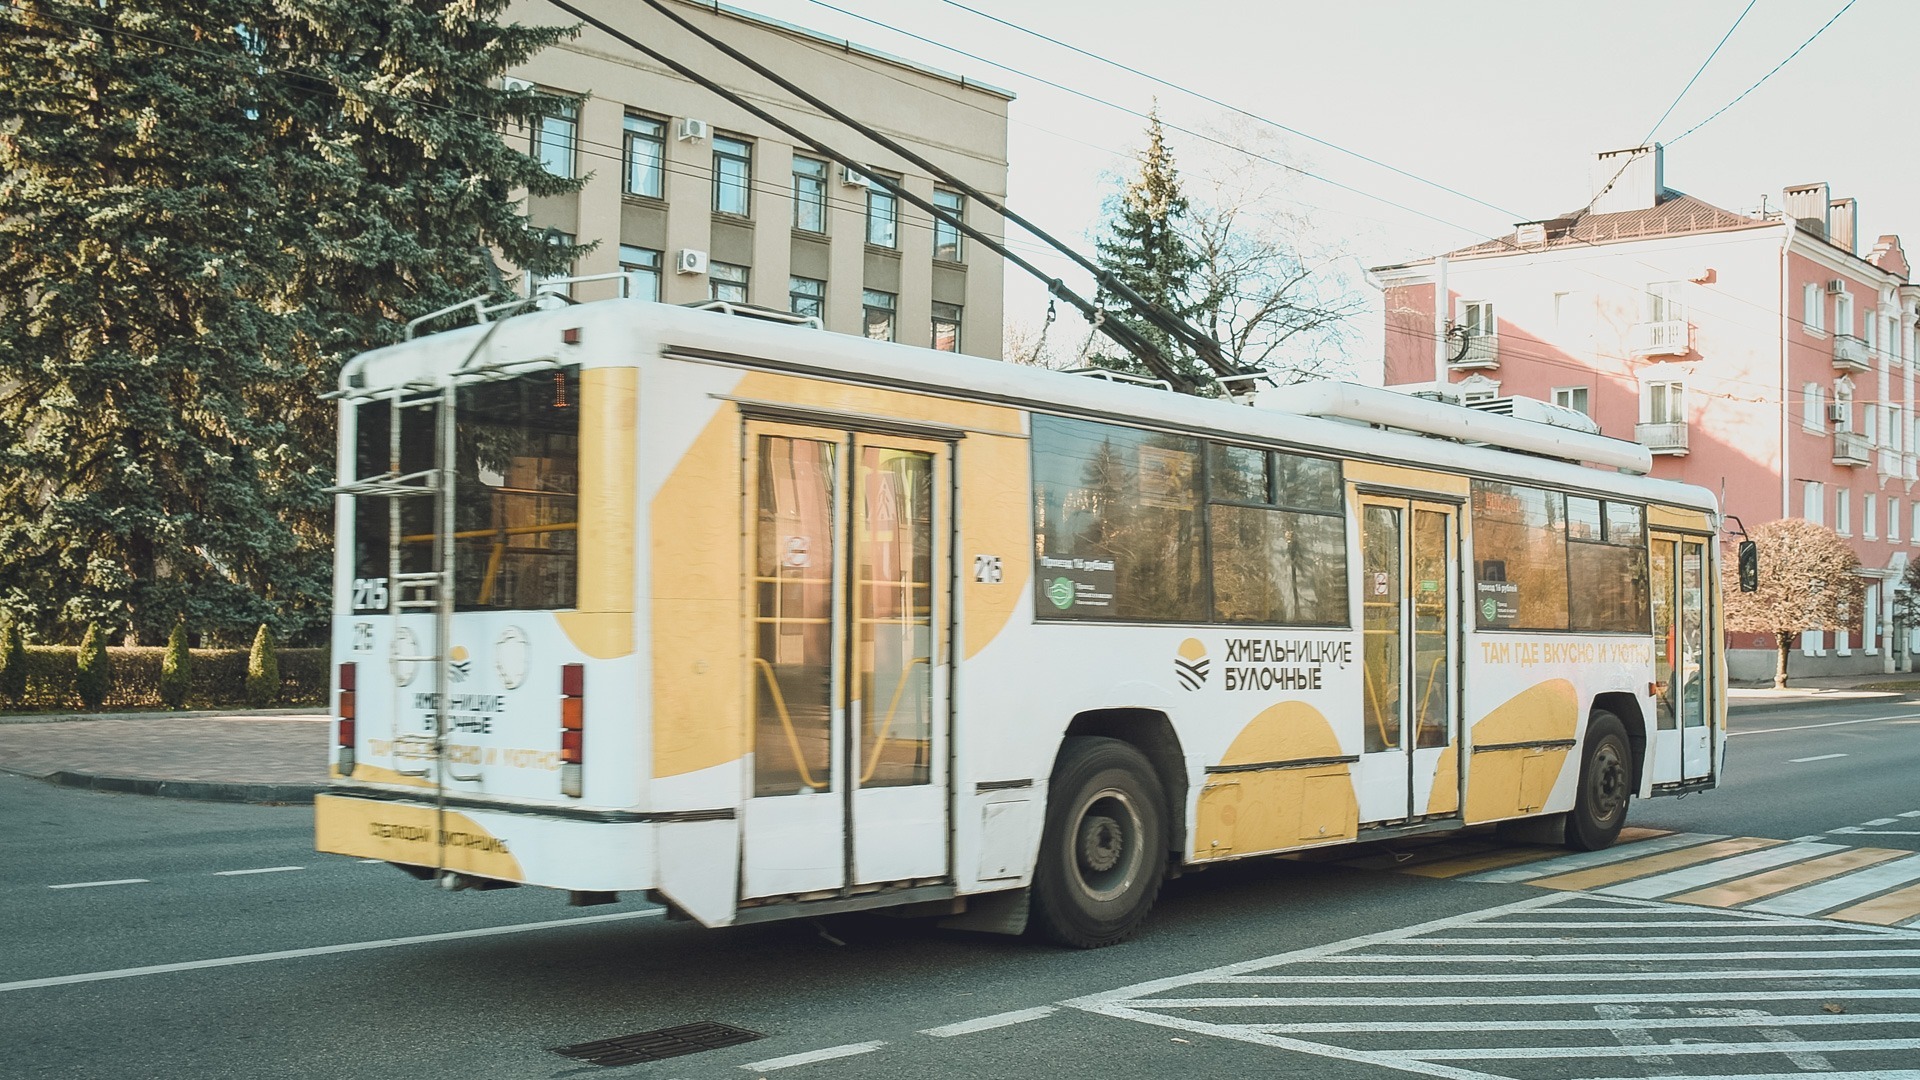 Износ парка троллейбусов в Новосибирске приближается к 100%